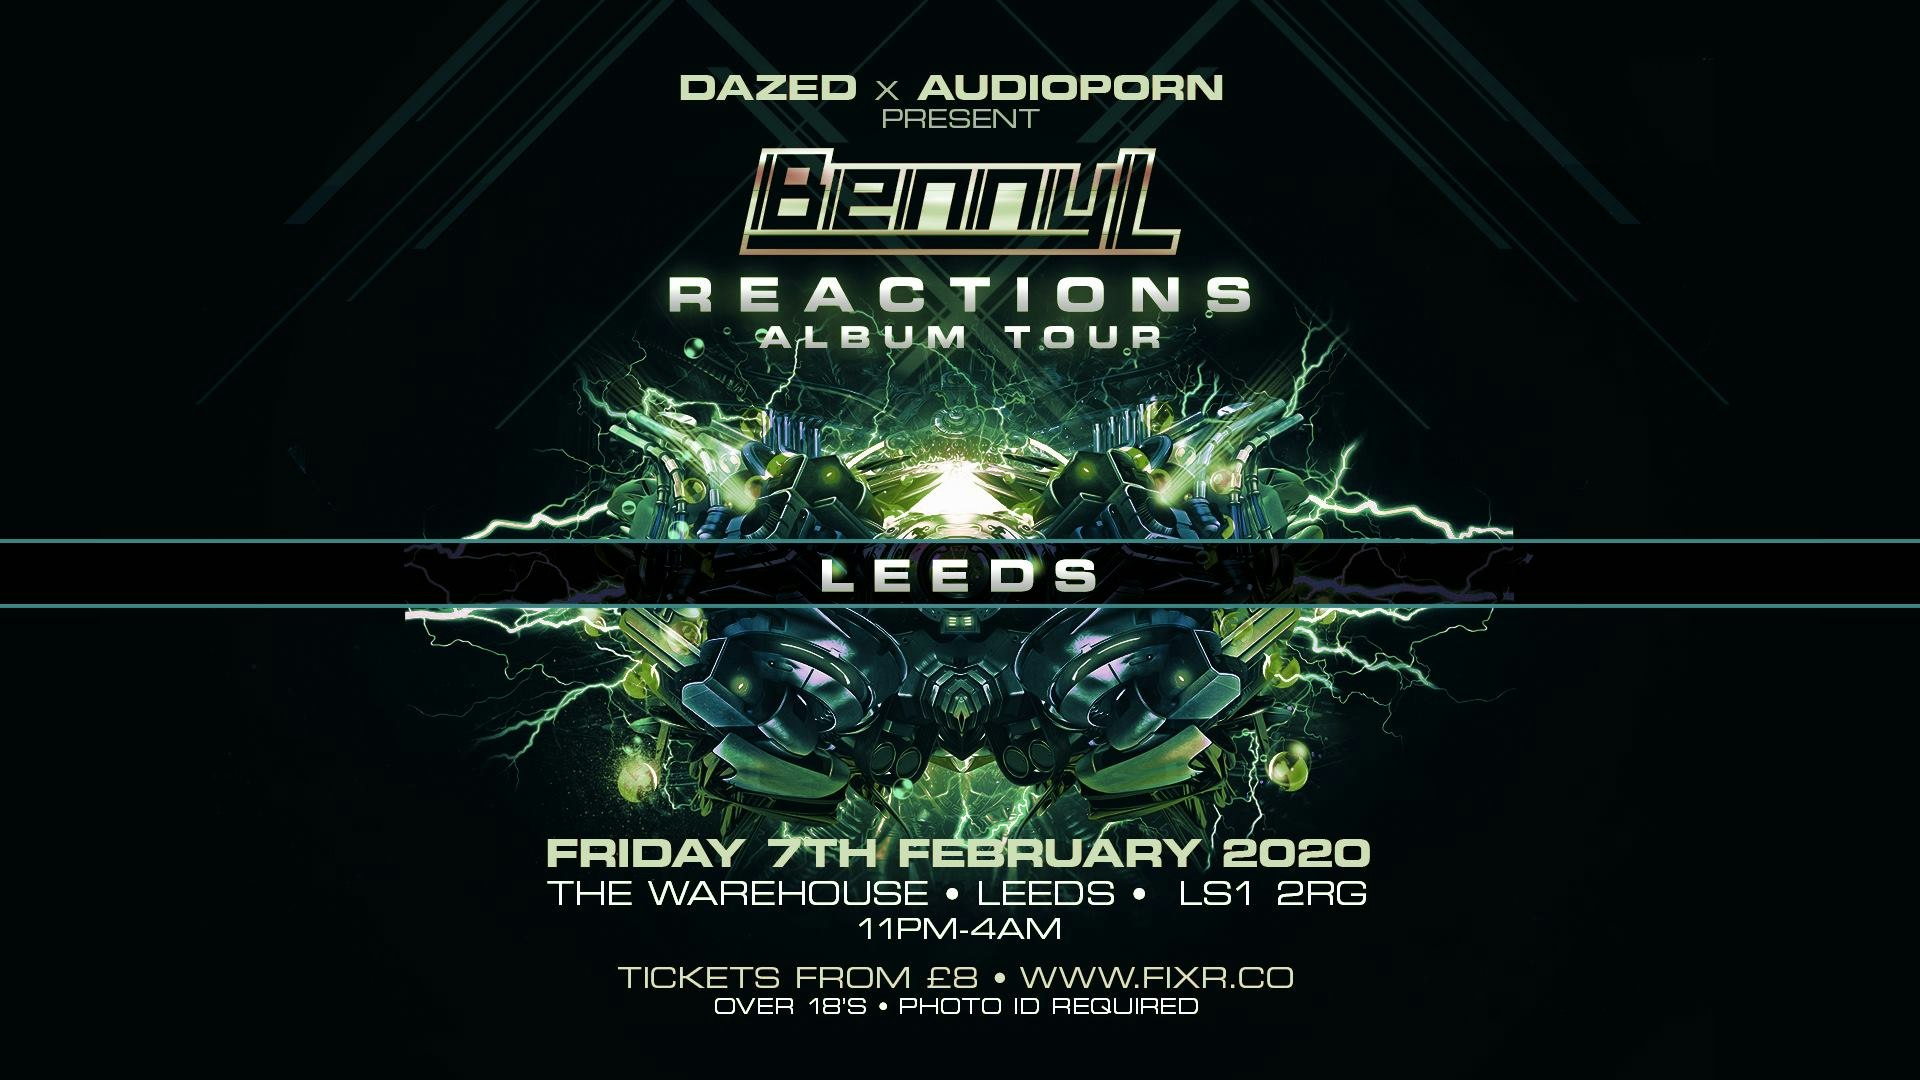 Benny L – Reactions Album Tour – The Warehouse Leeds